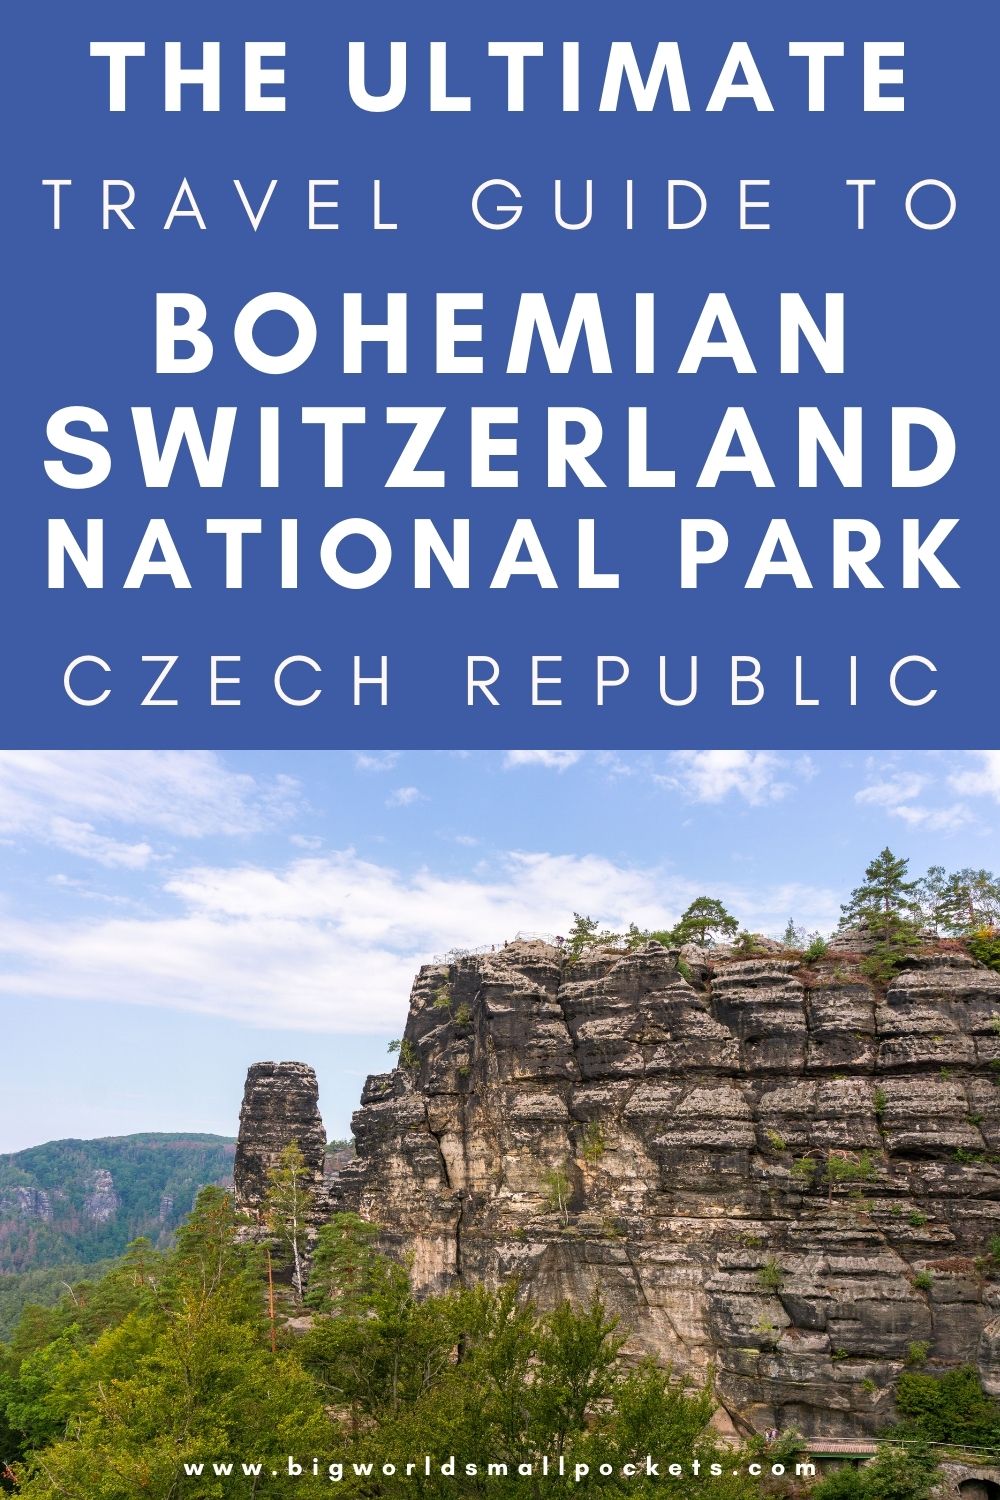 Full Travel Guide to Bohemian Switzerland, Czechia